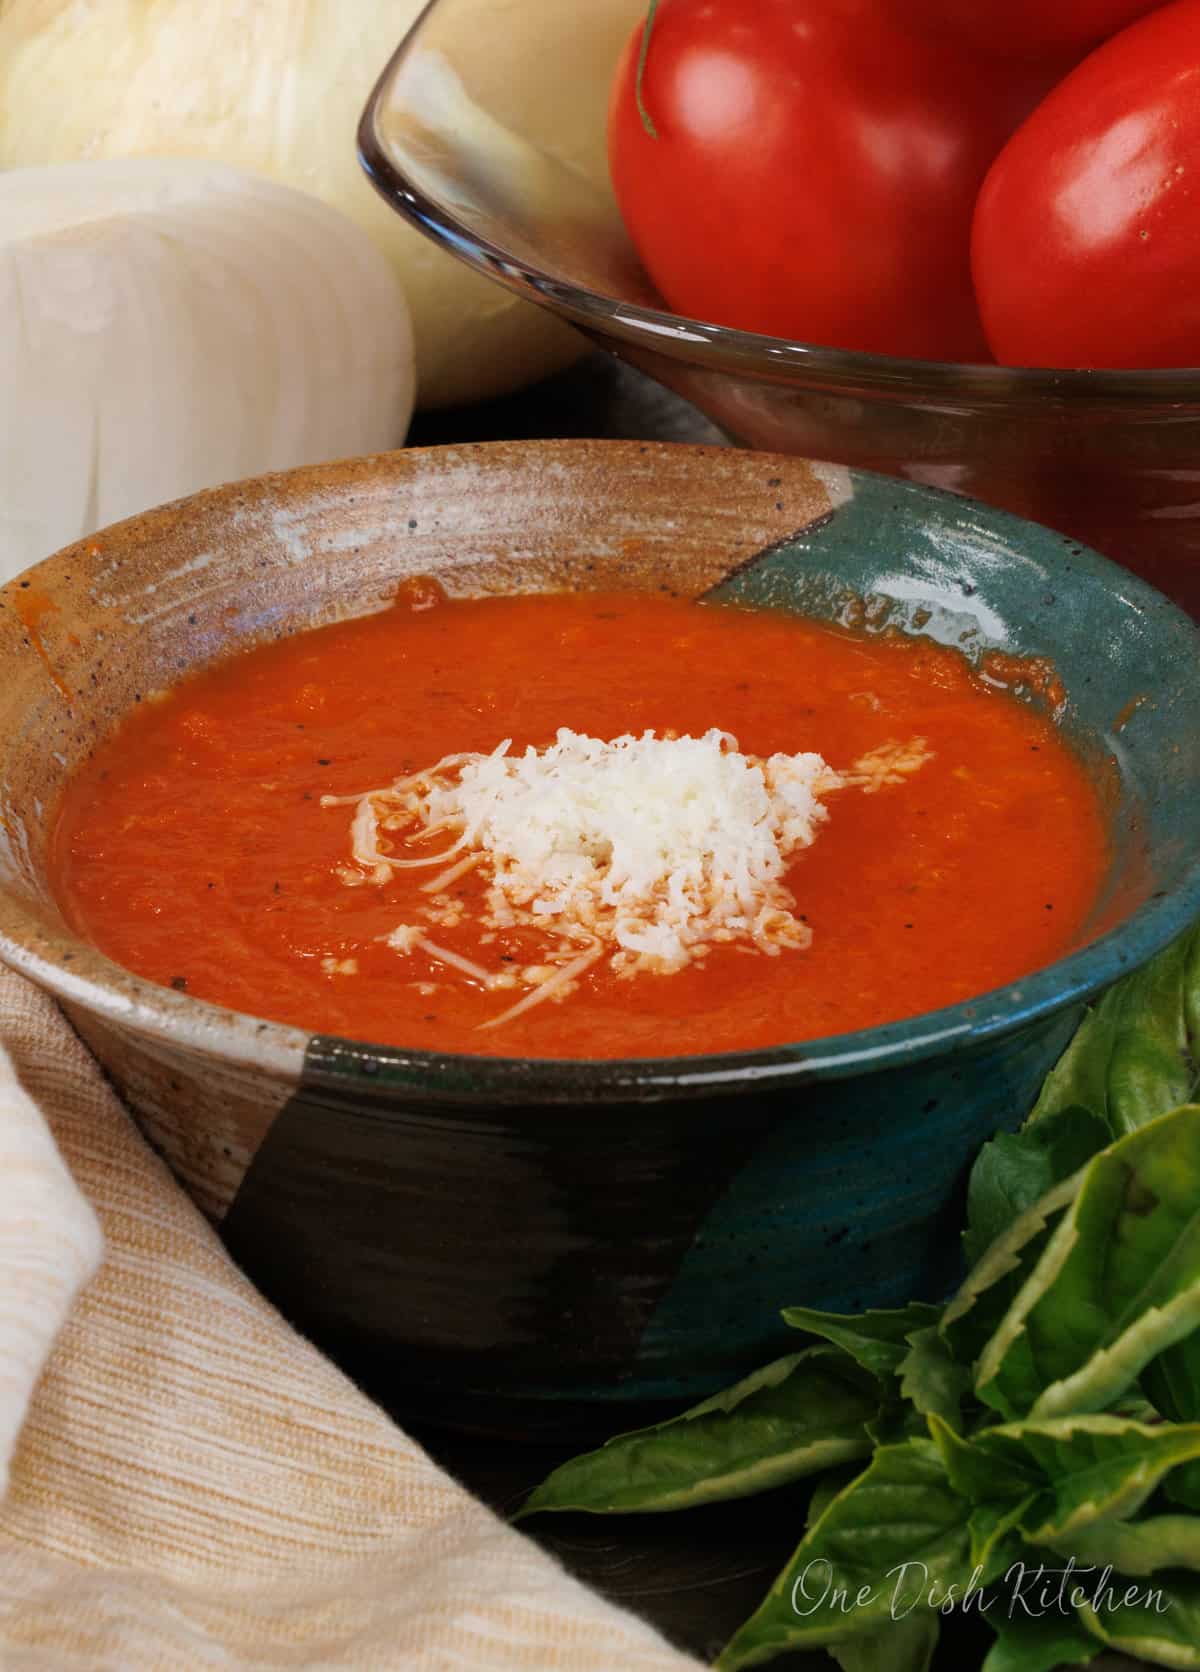 Tomato Parmesan Soup, 24 oz at Whole Foods Market